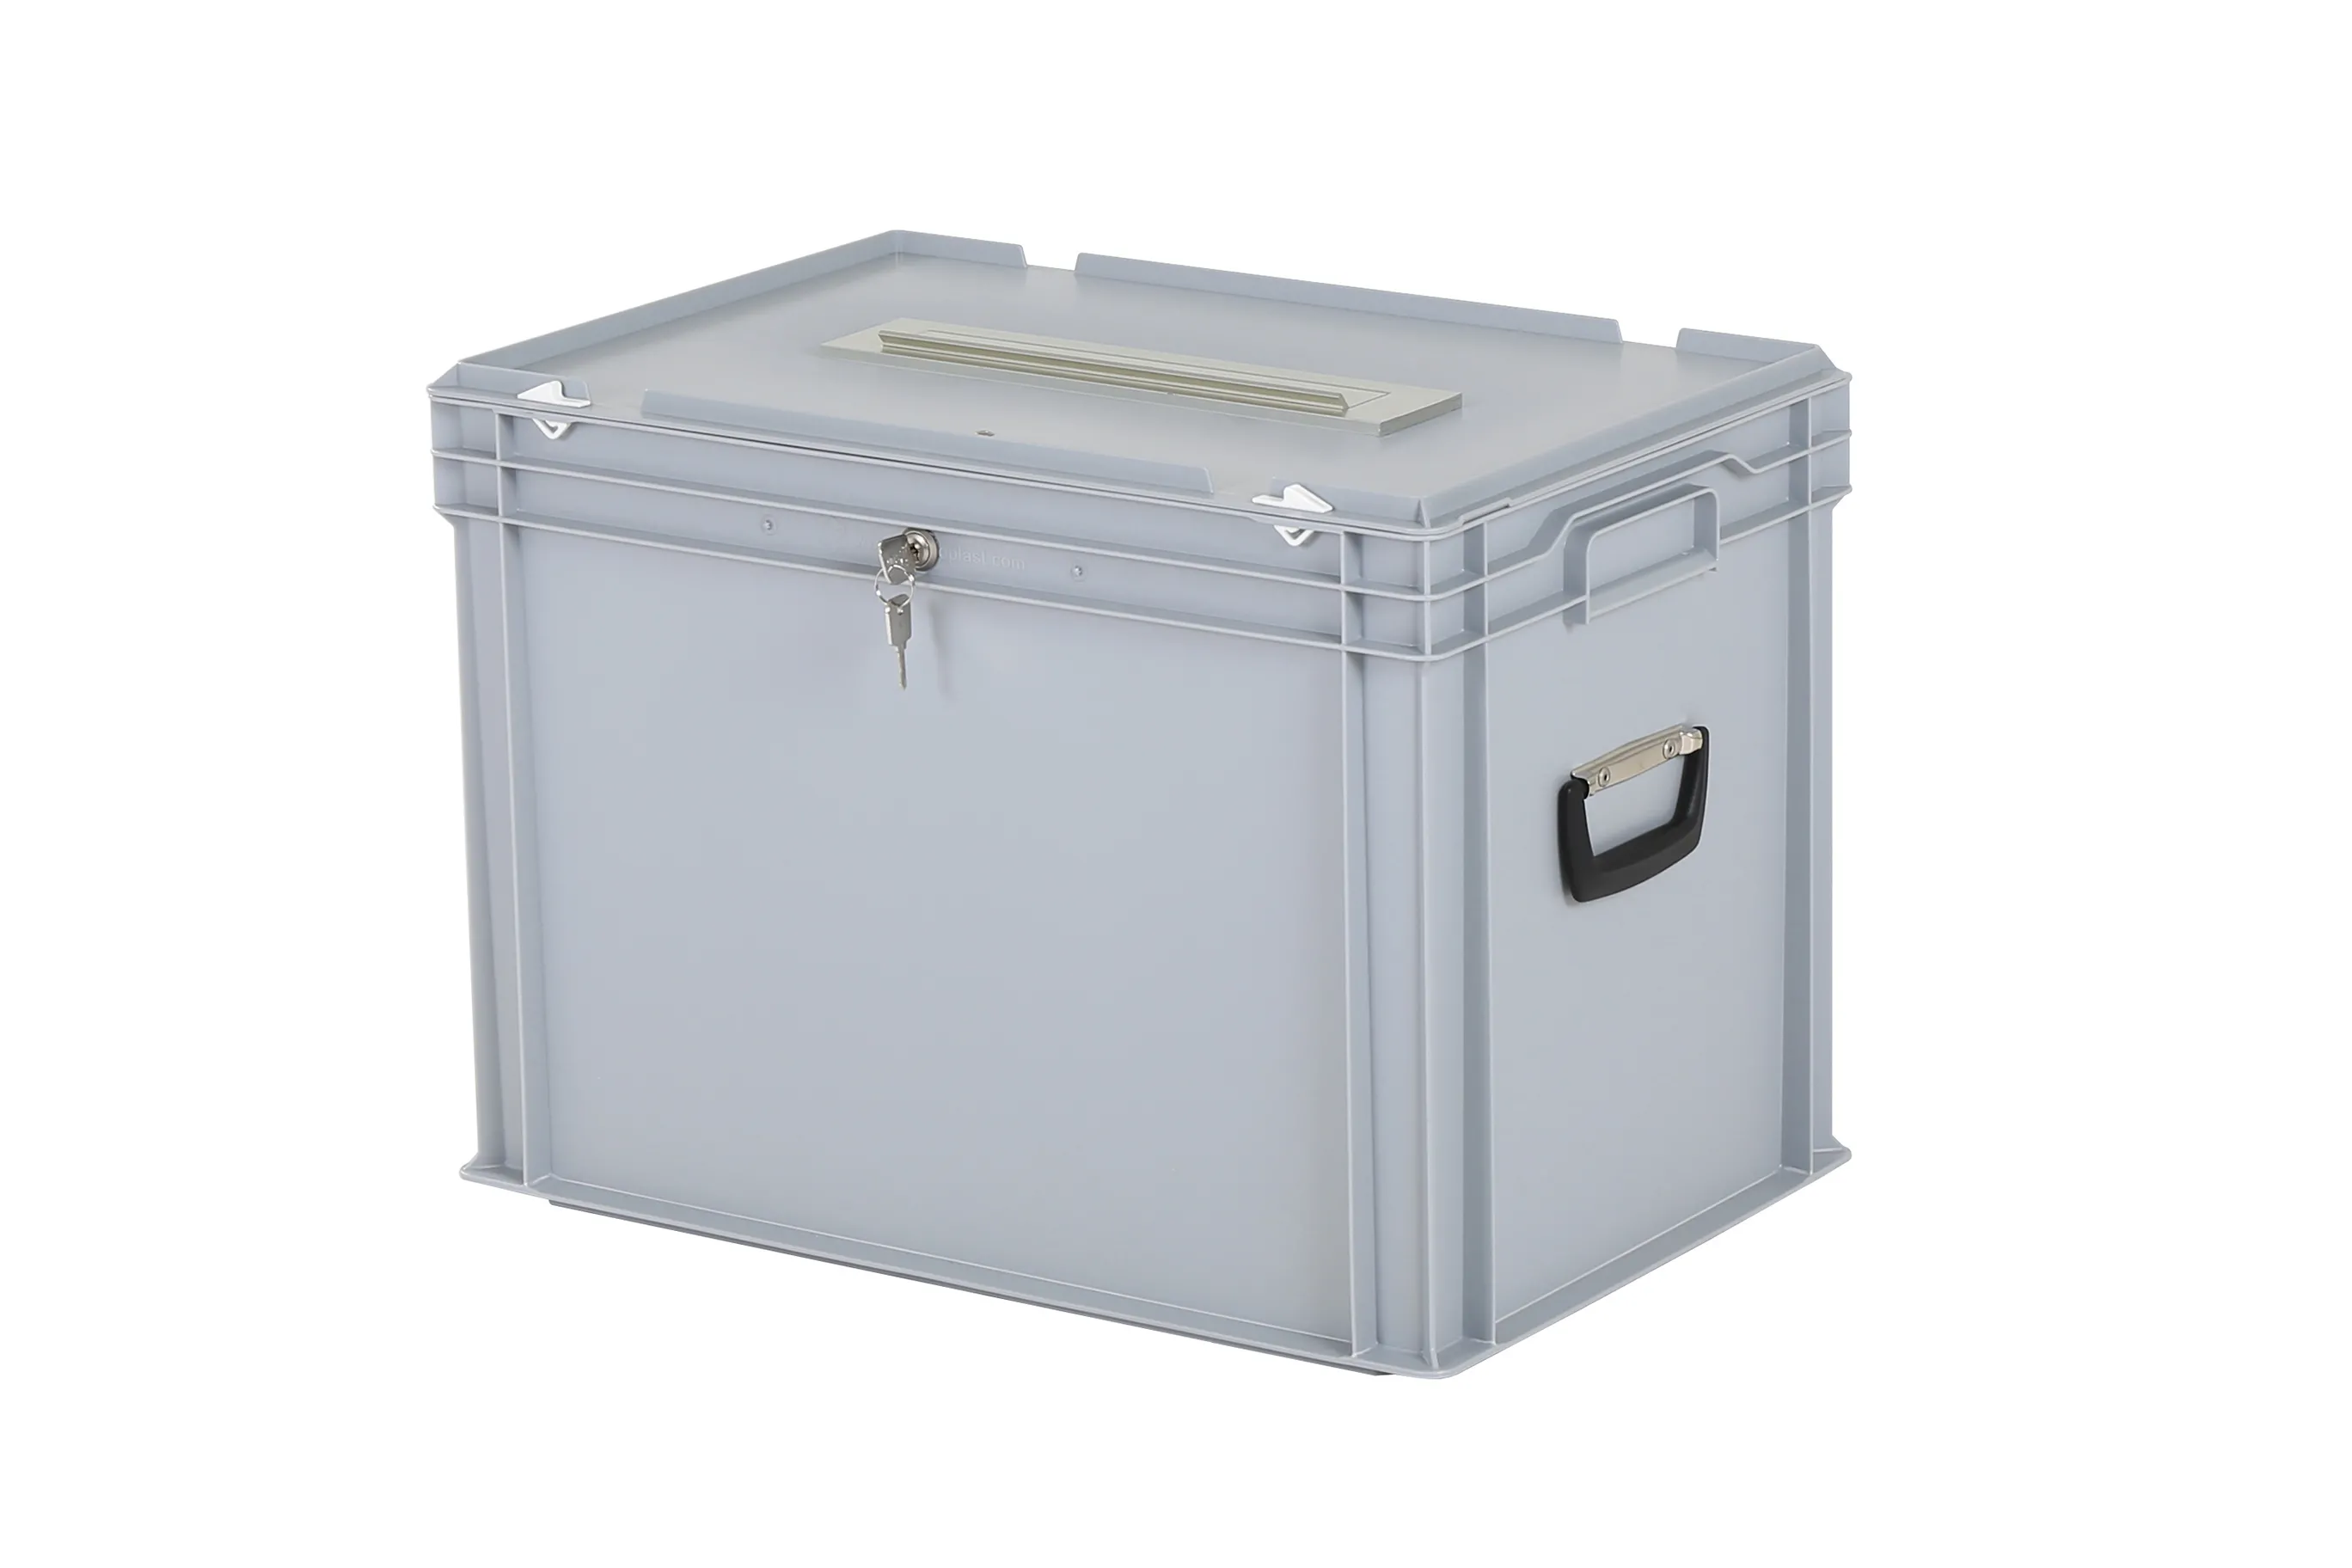 Stembus | Transportbox met brievenbusklep en slot - 600 x 400 x H 439 mm - grijs | Gelijksluitend slot